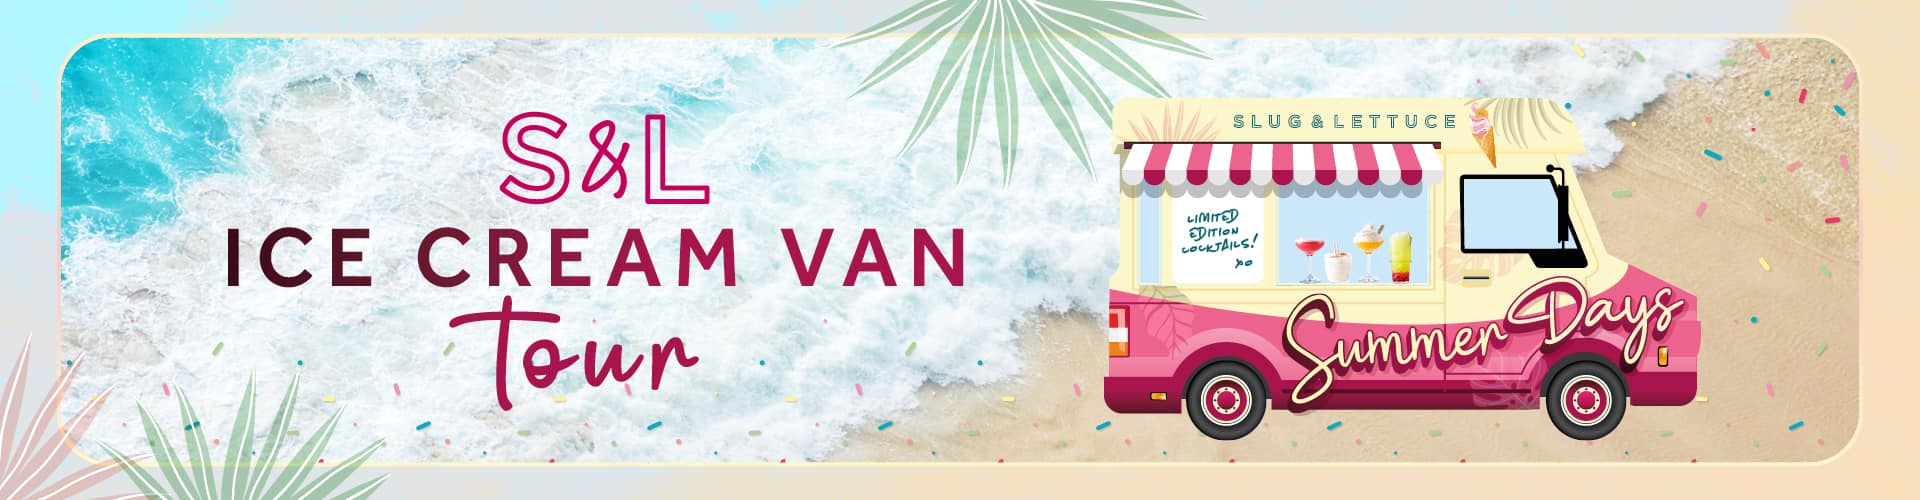 Ice Cream Van Tour